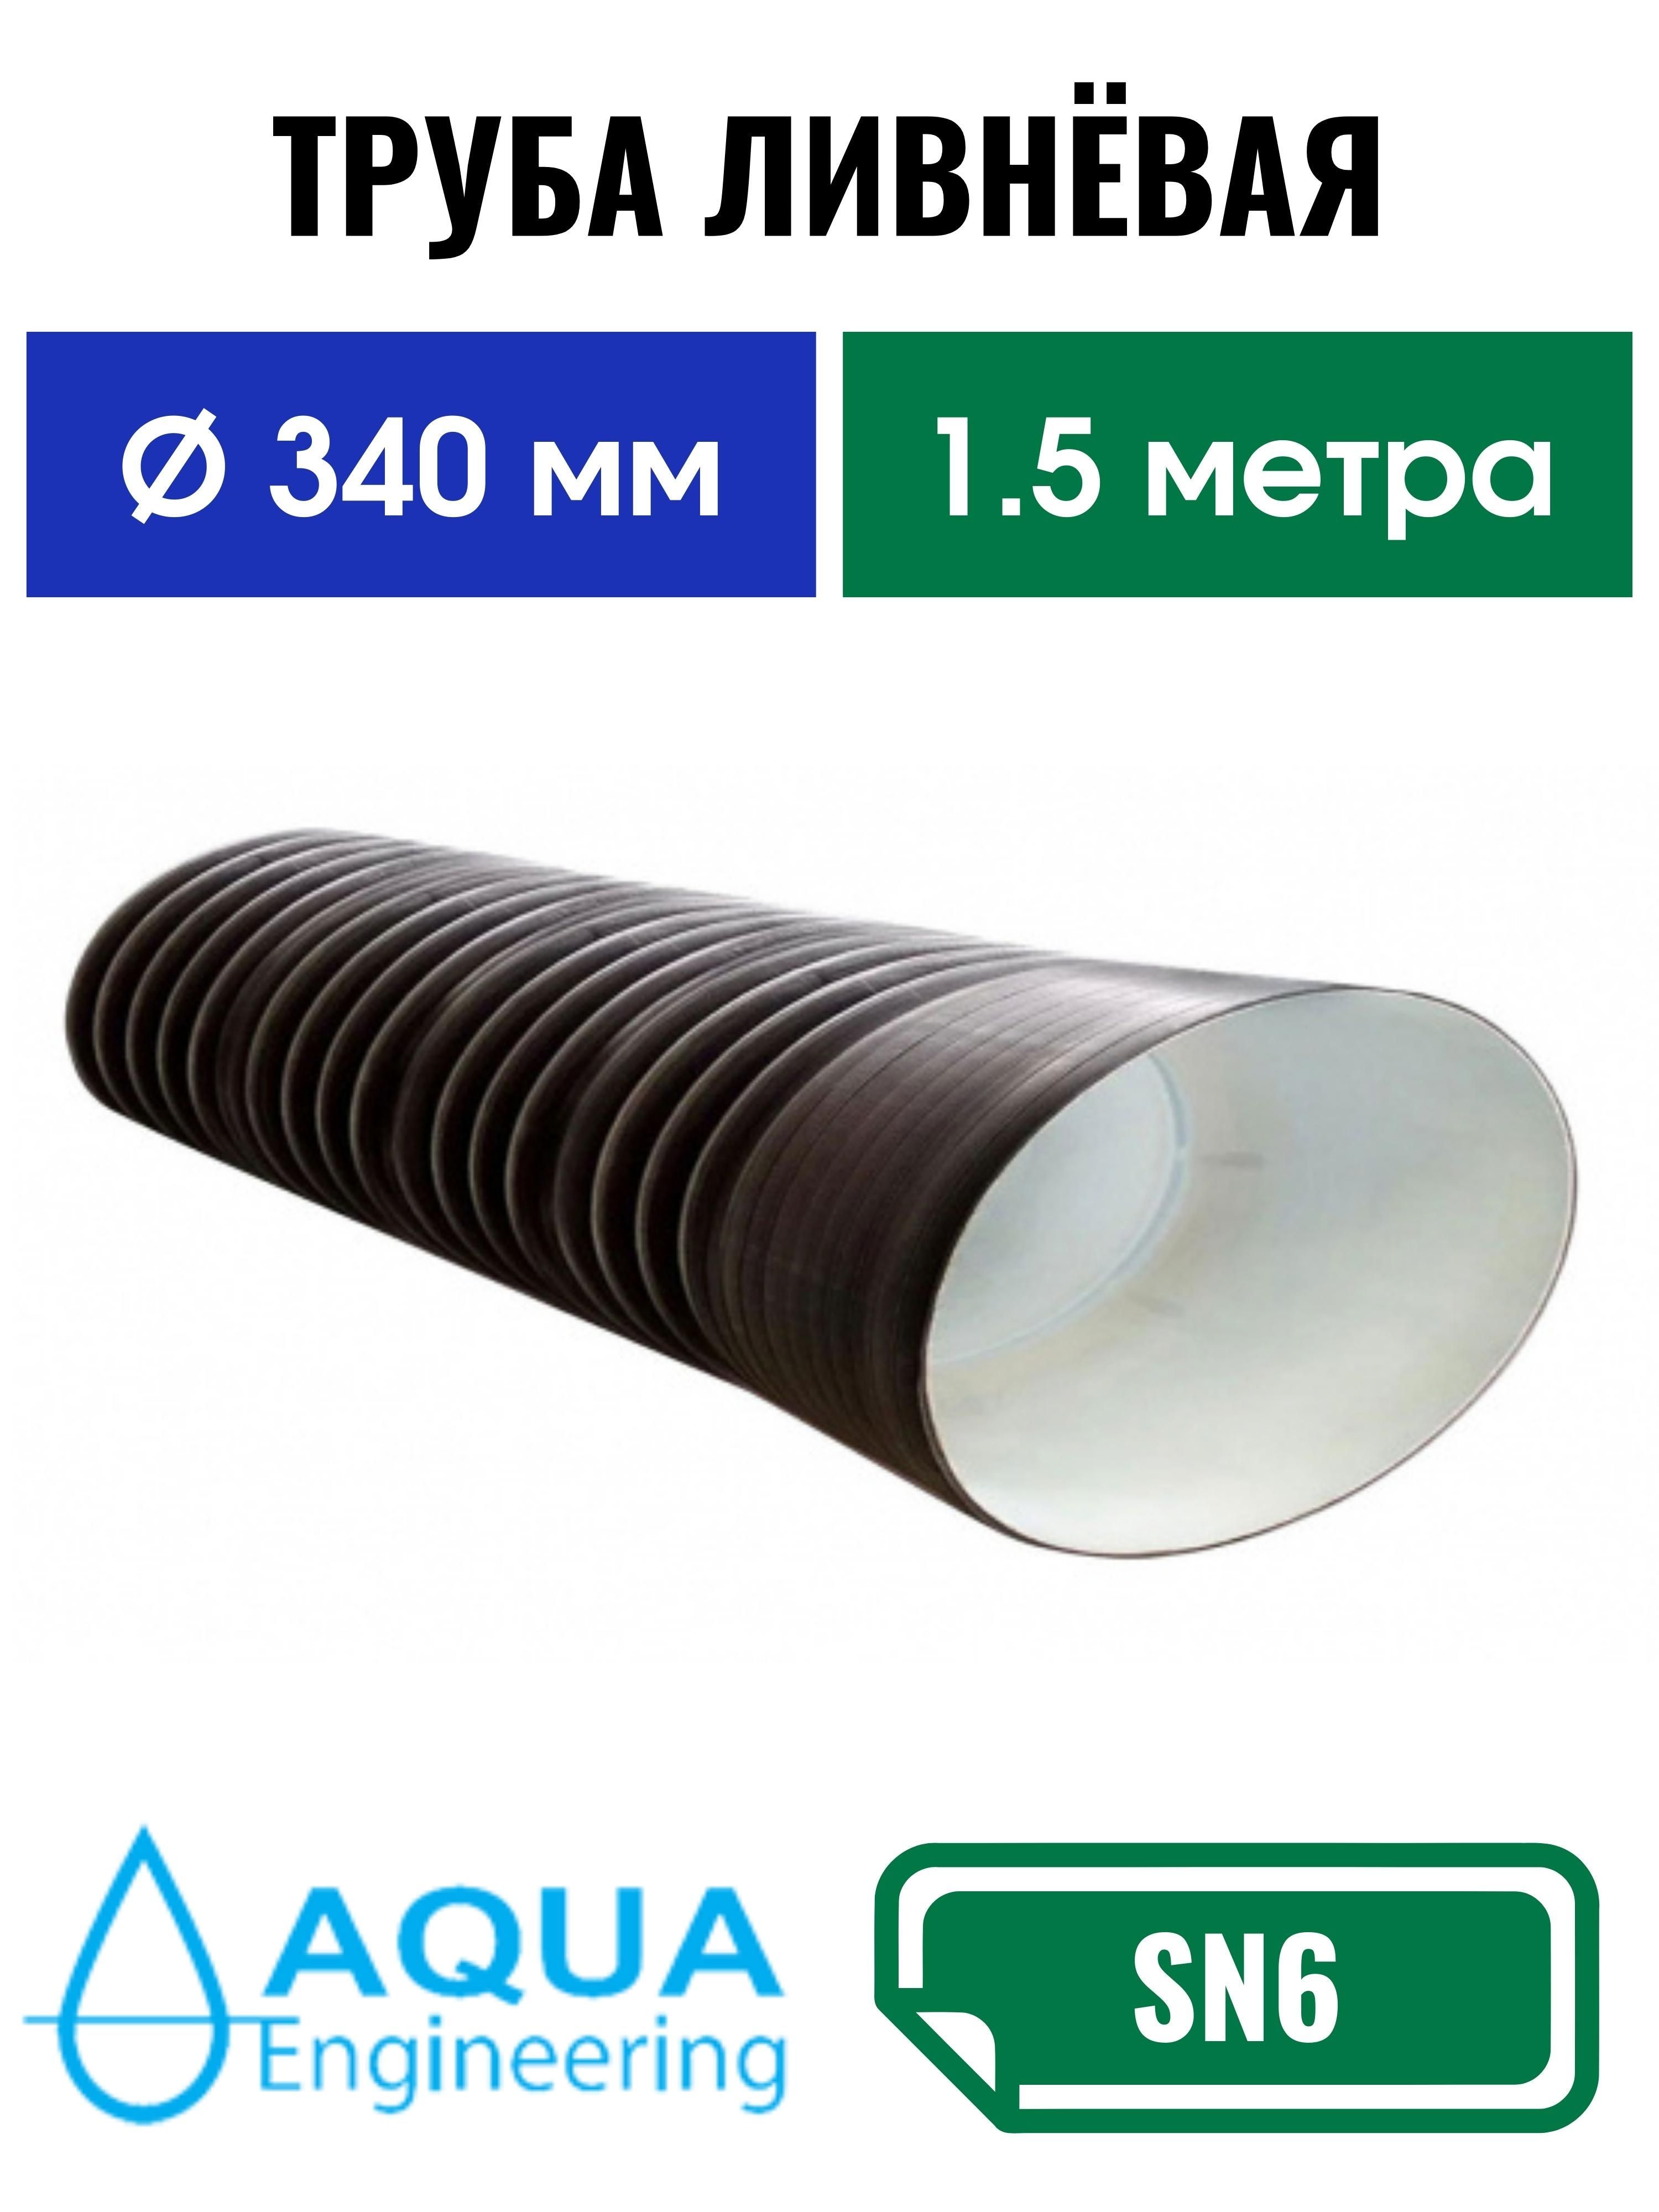 Купить водостоки и водосточные системы Аквасистем (Aquasystem) в Москве